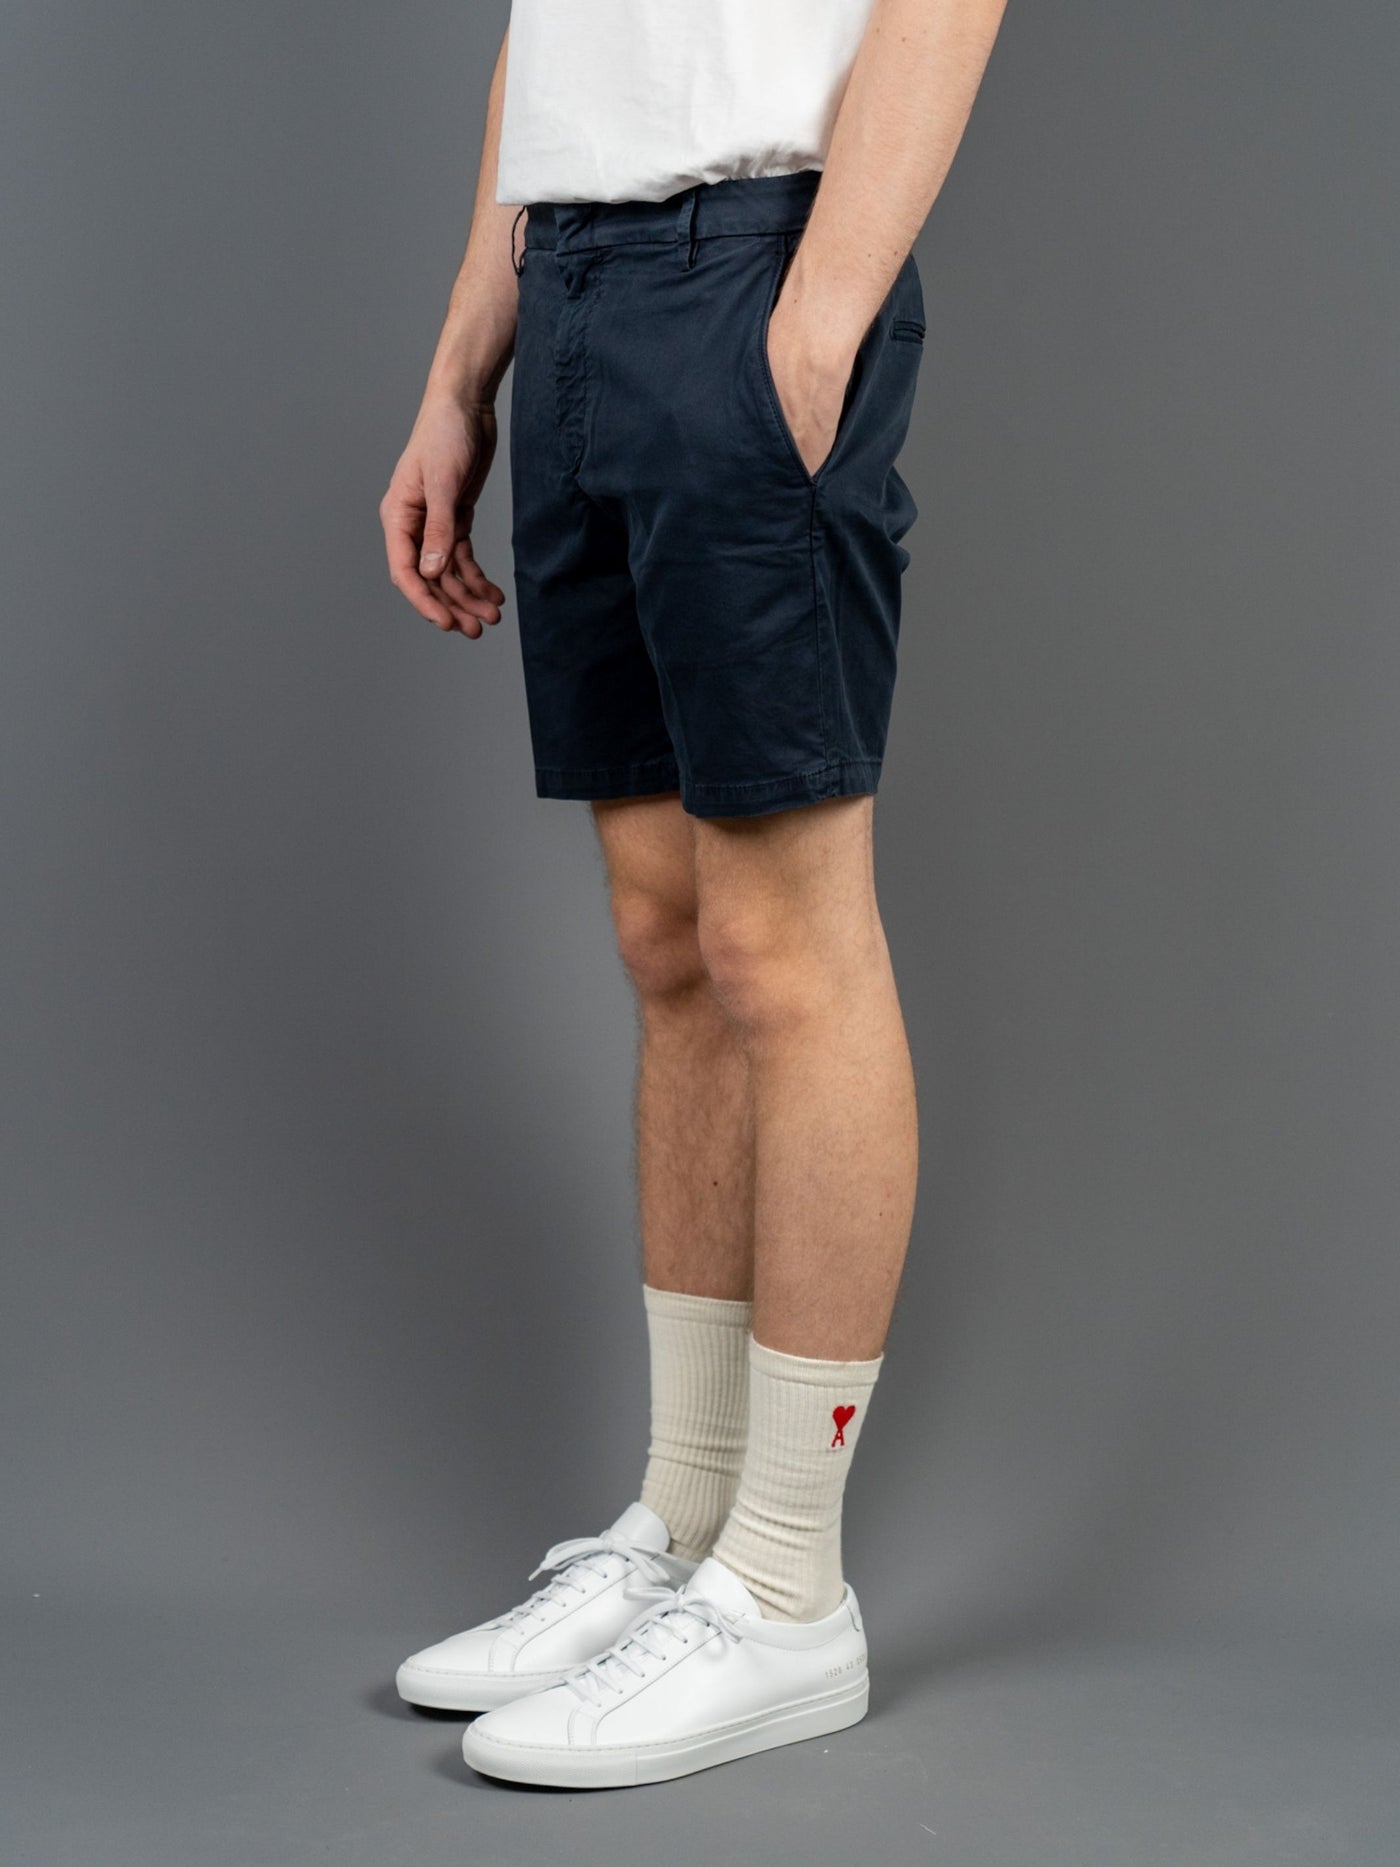 Manheim Cotton Shorts - Blå